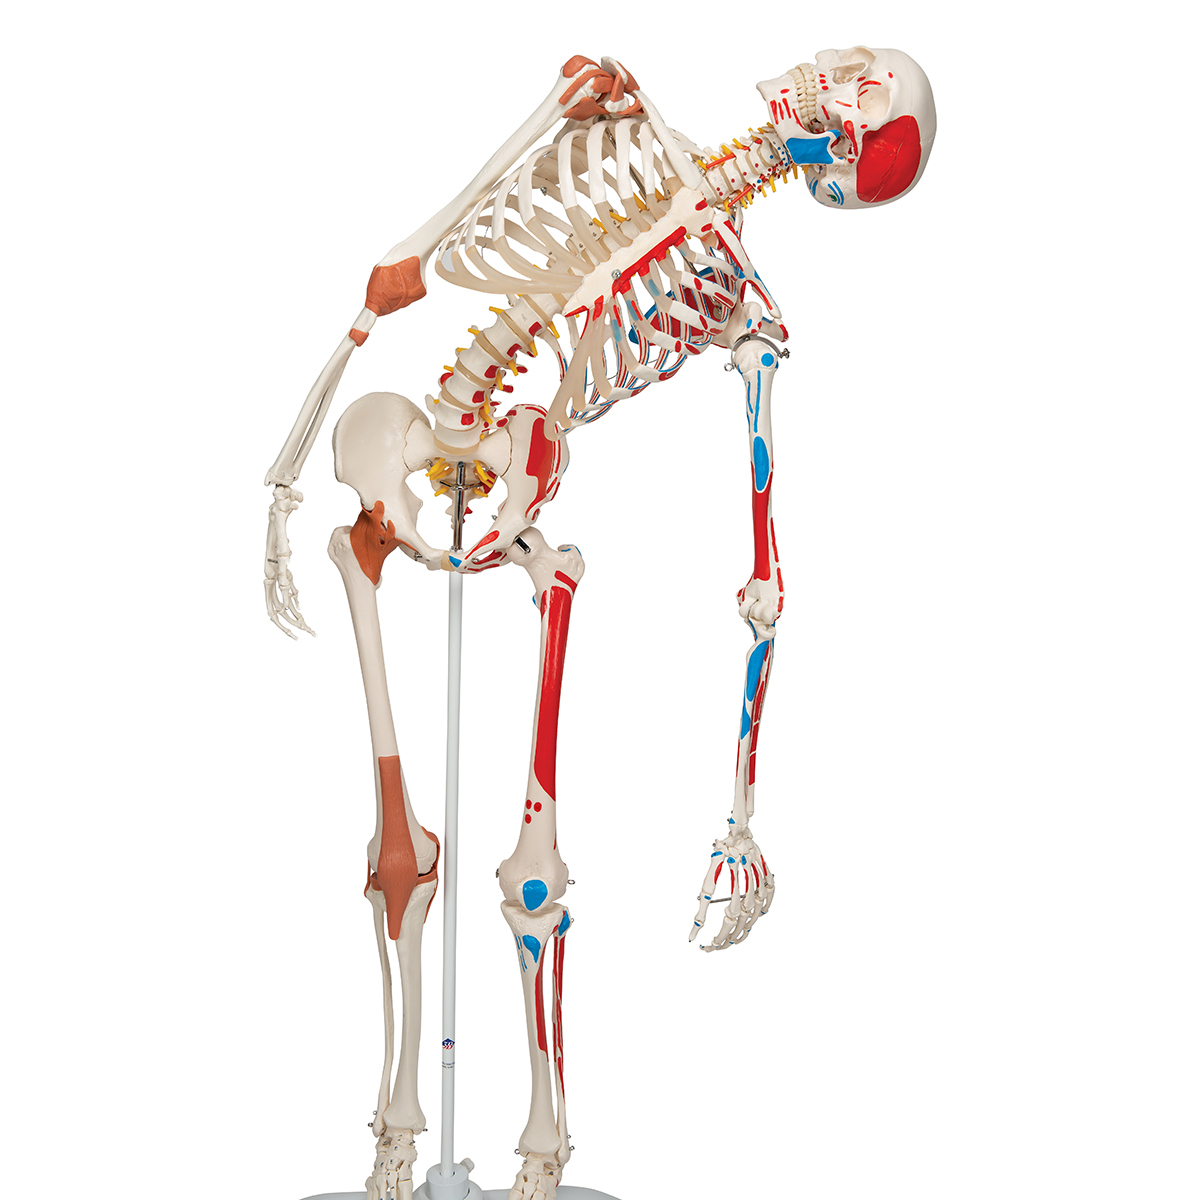 Squelette humain premium